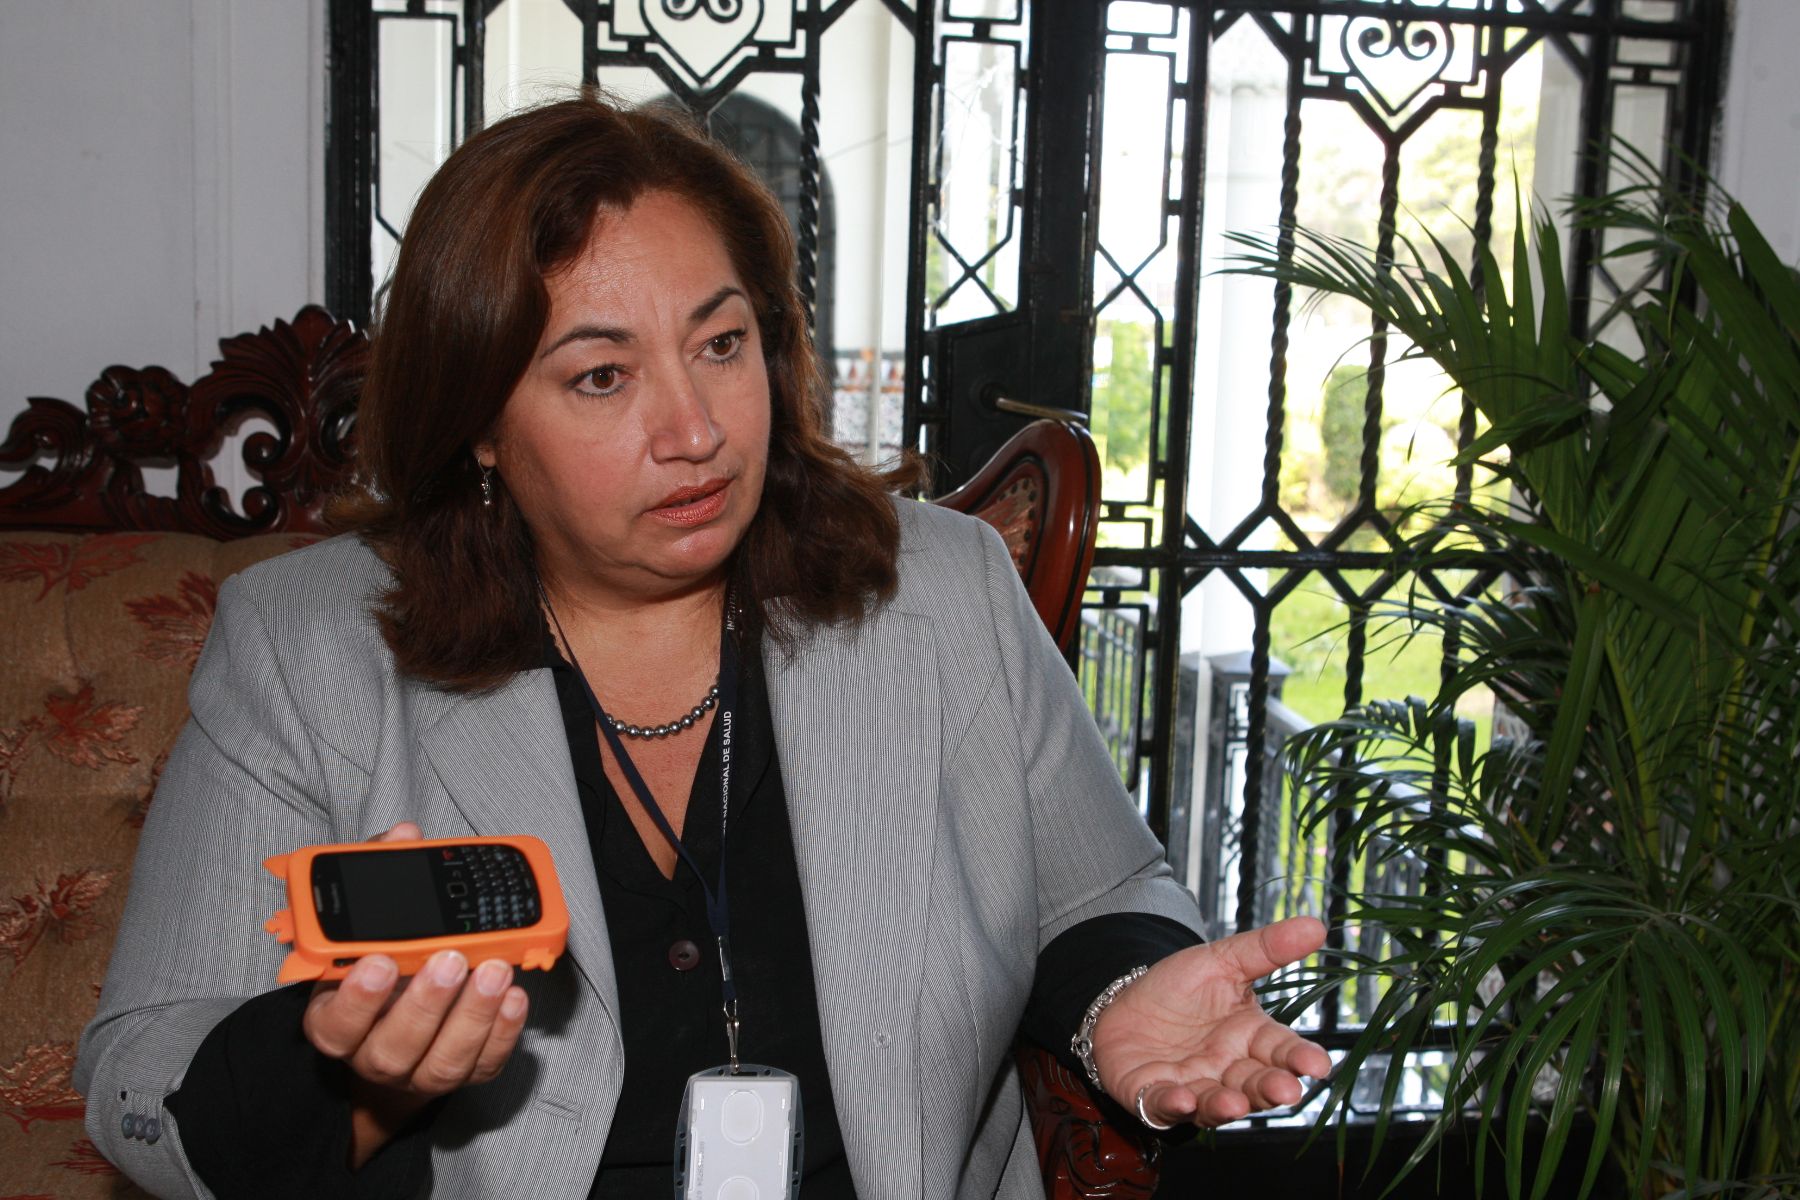 Doctora María del Carmen Gastañaga advierte que celulares son vehículos de contaminación y generación de enfermedades. Foto: ANDINA/Norman Córdova.